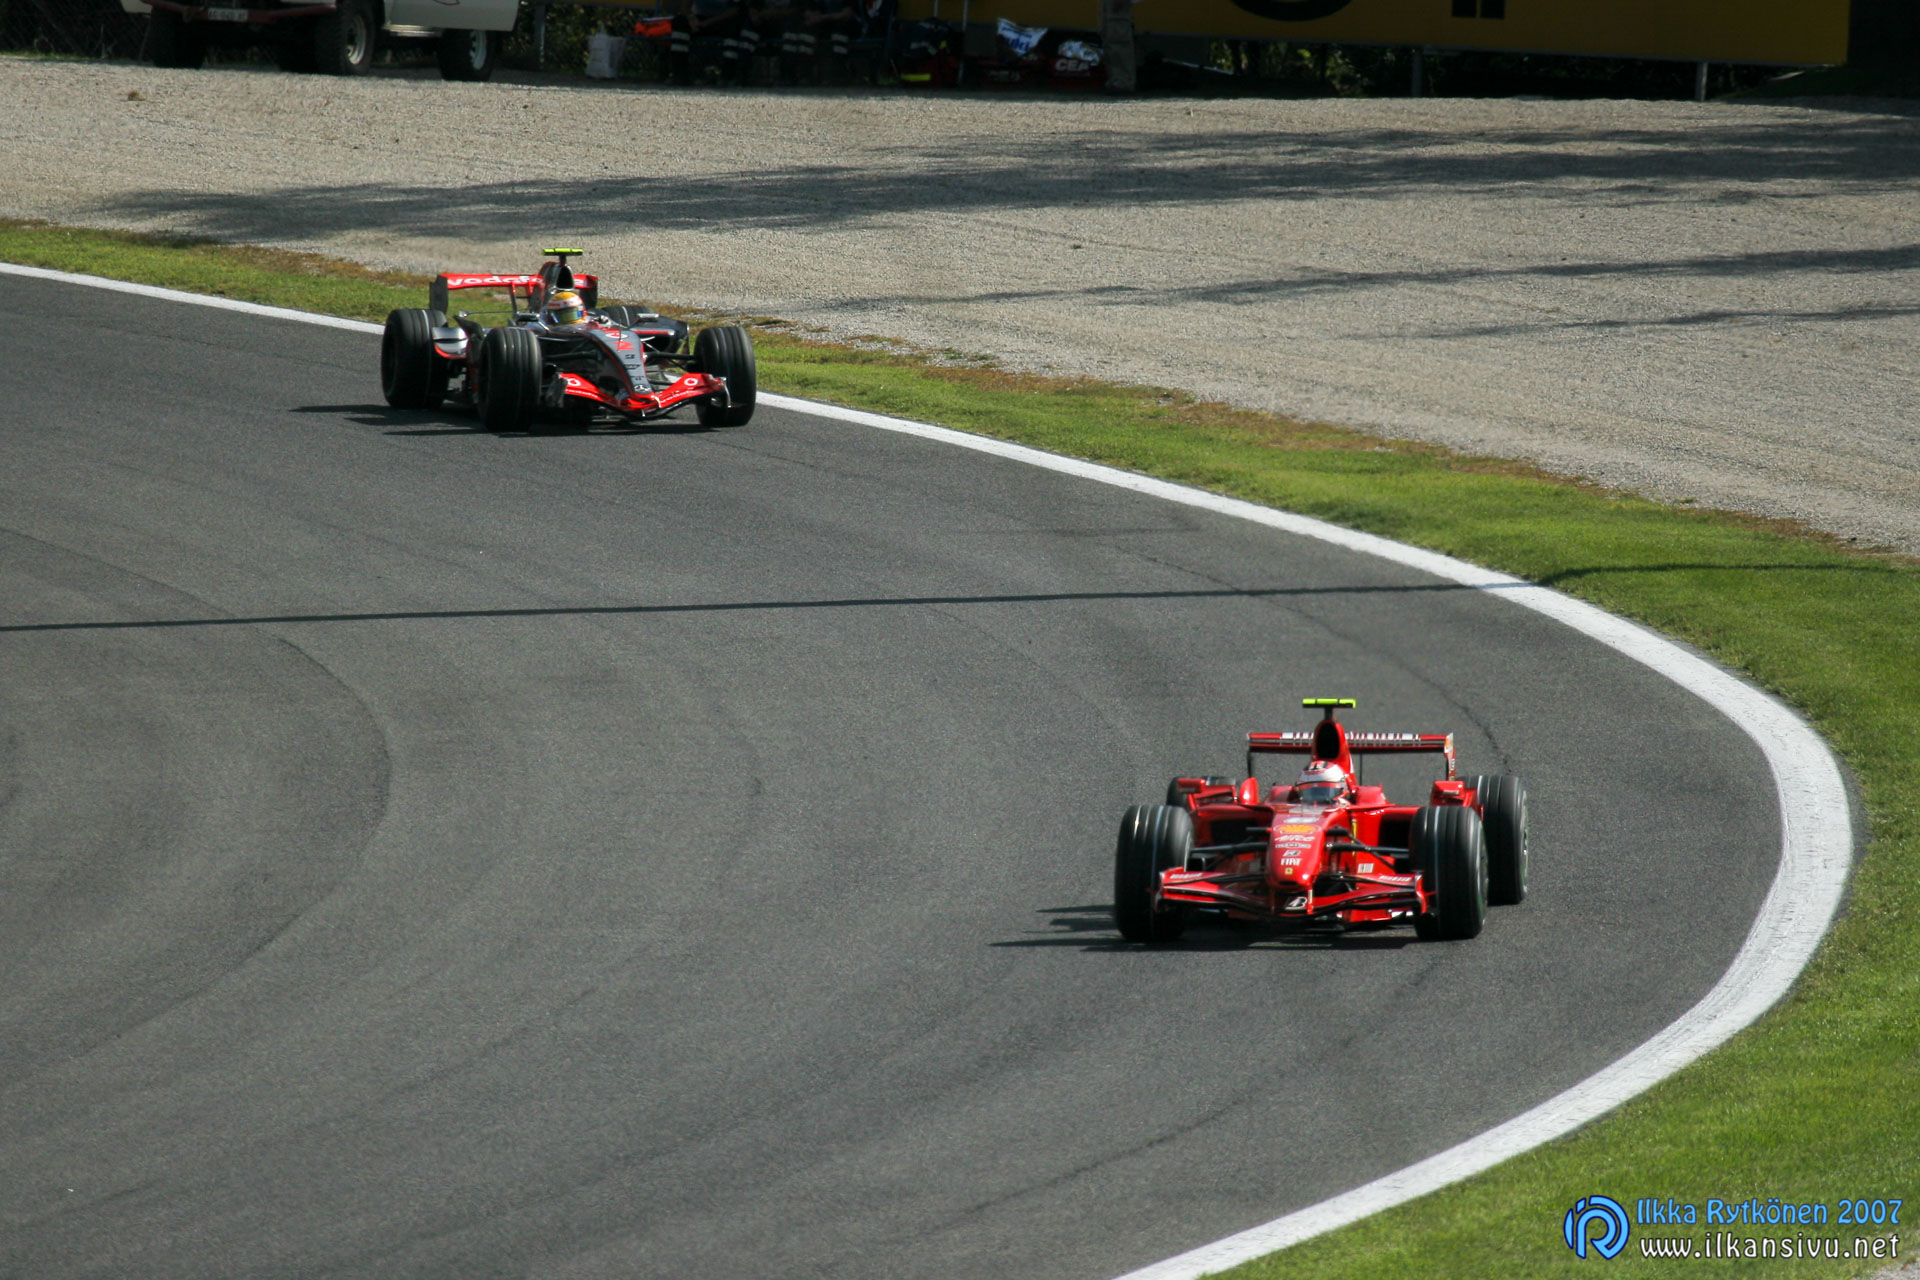 Harjoitus 2: Kimi Räikkönen vs. Lewis Hamilton